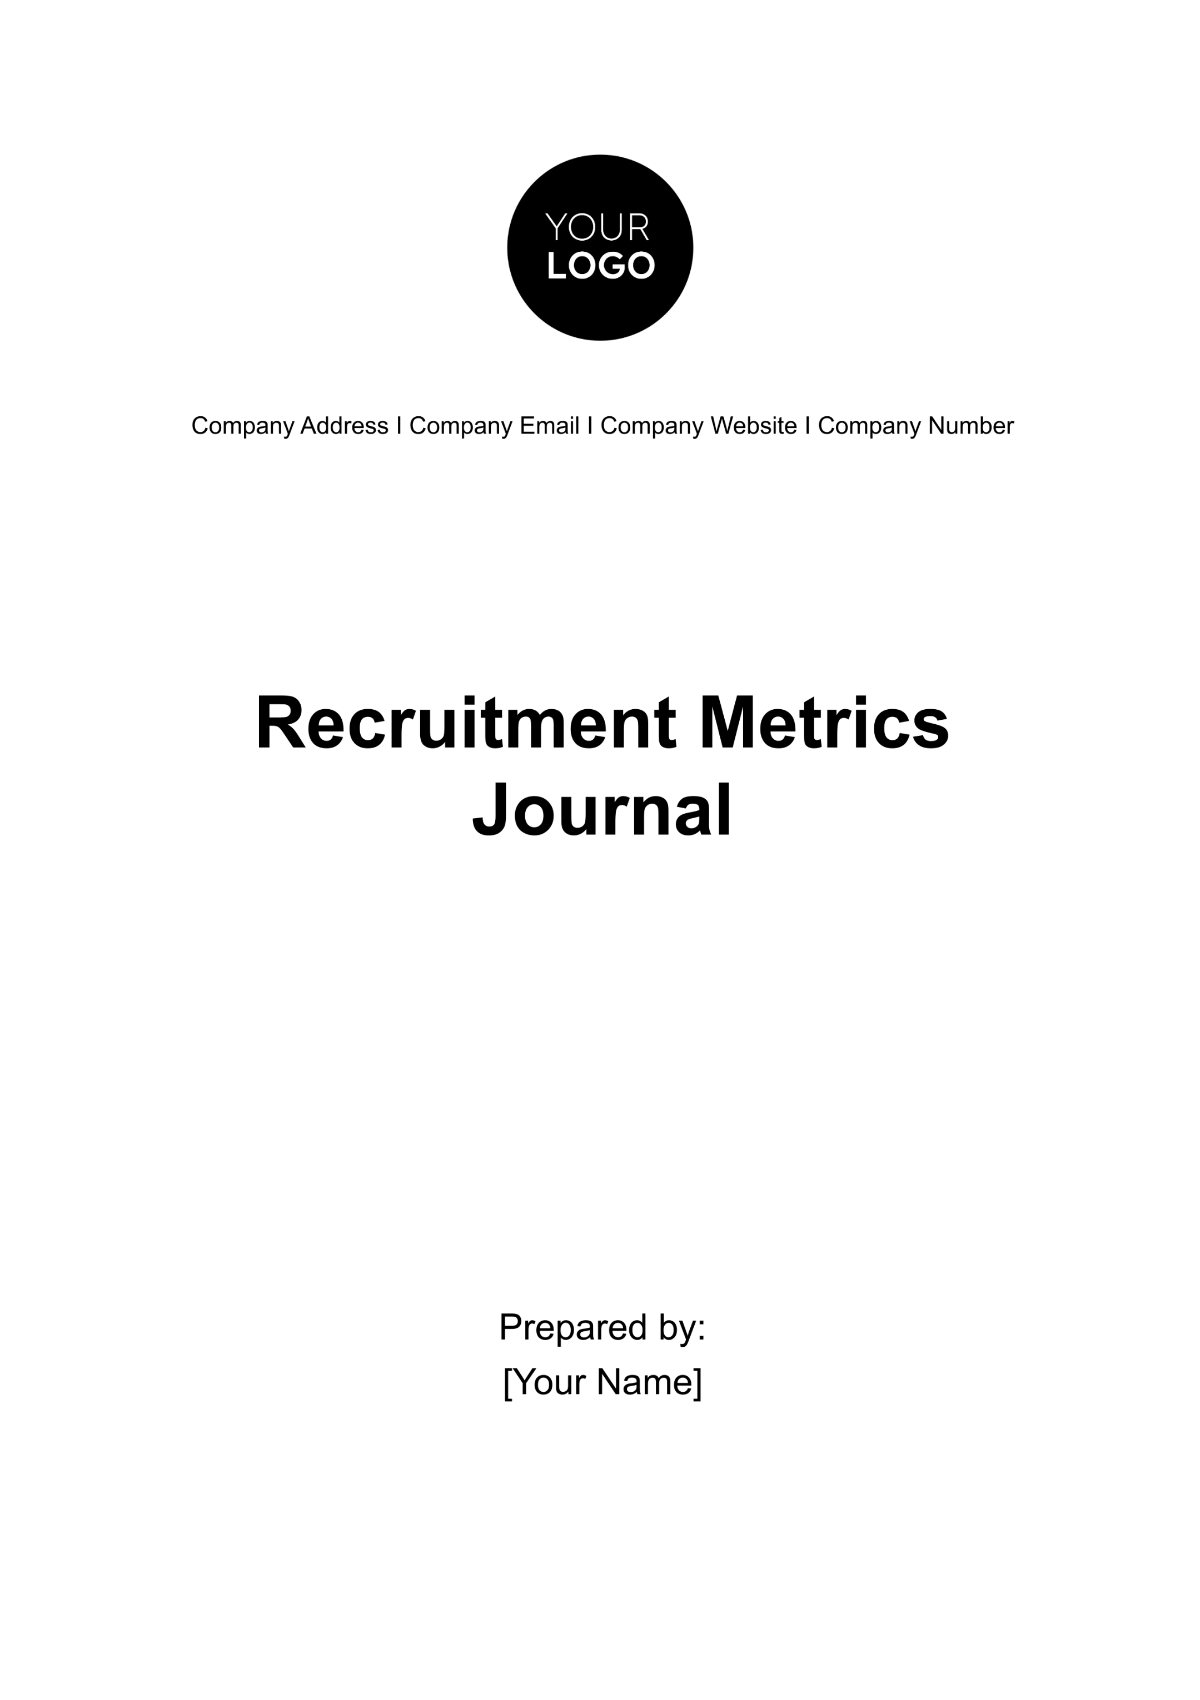 Recruitment Metrics Journal HR Template